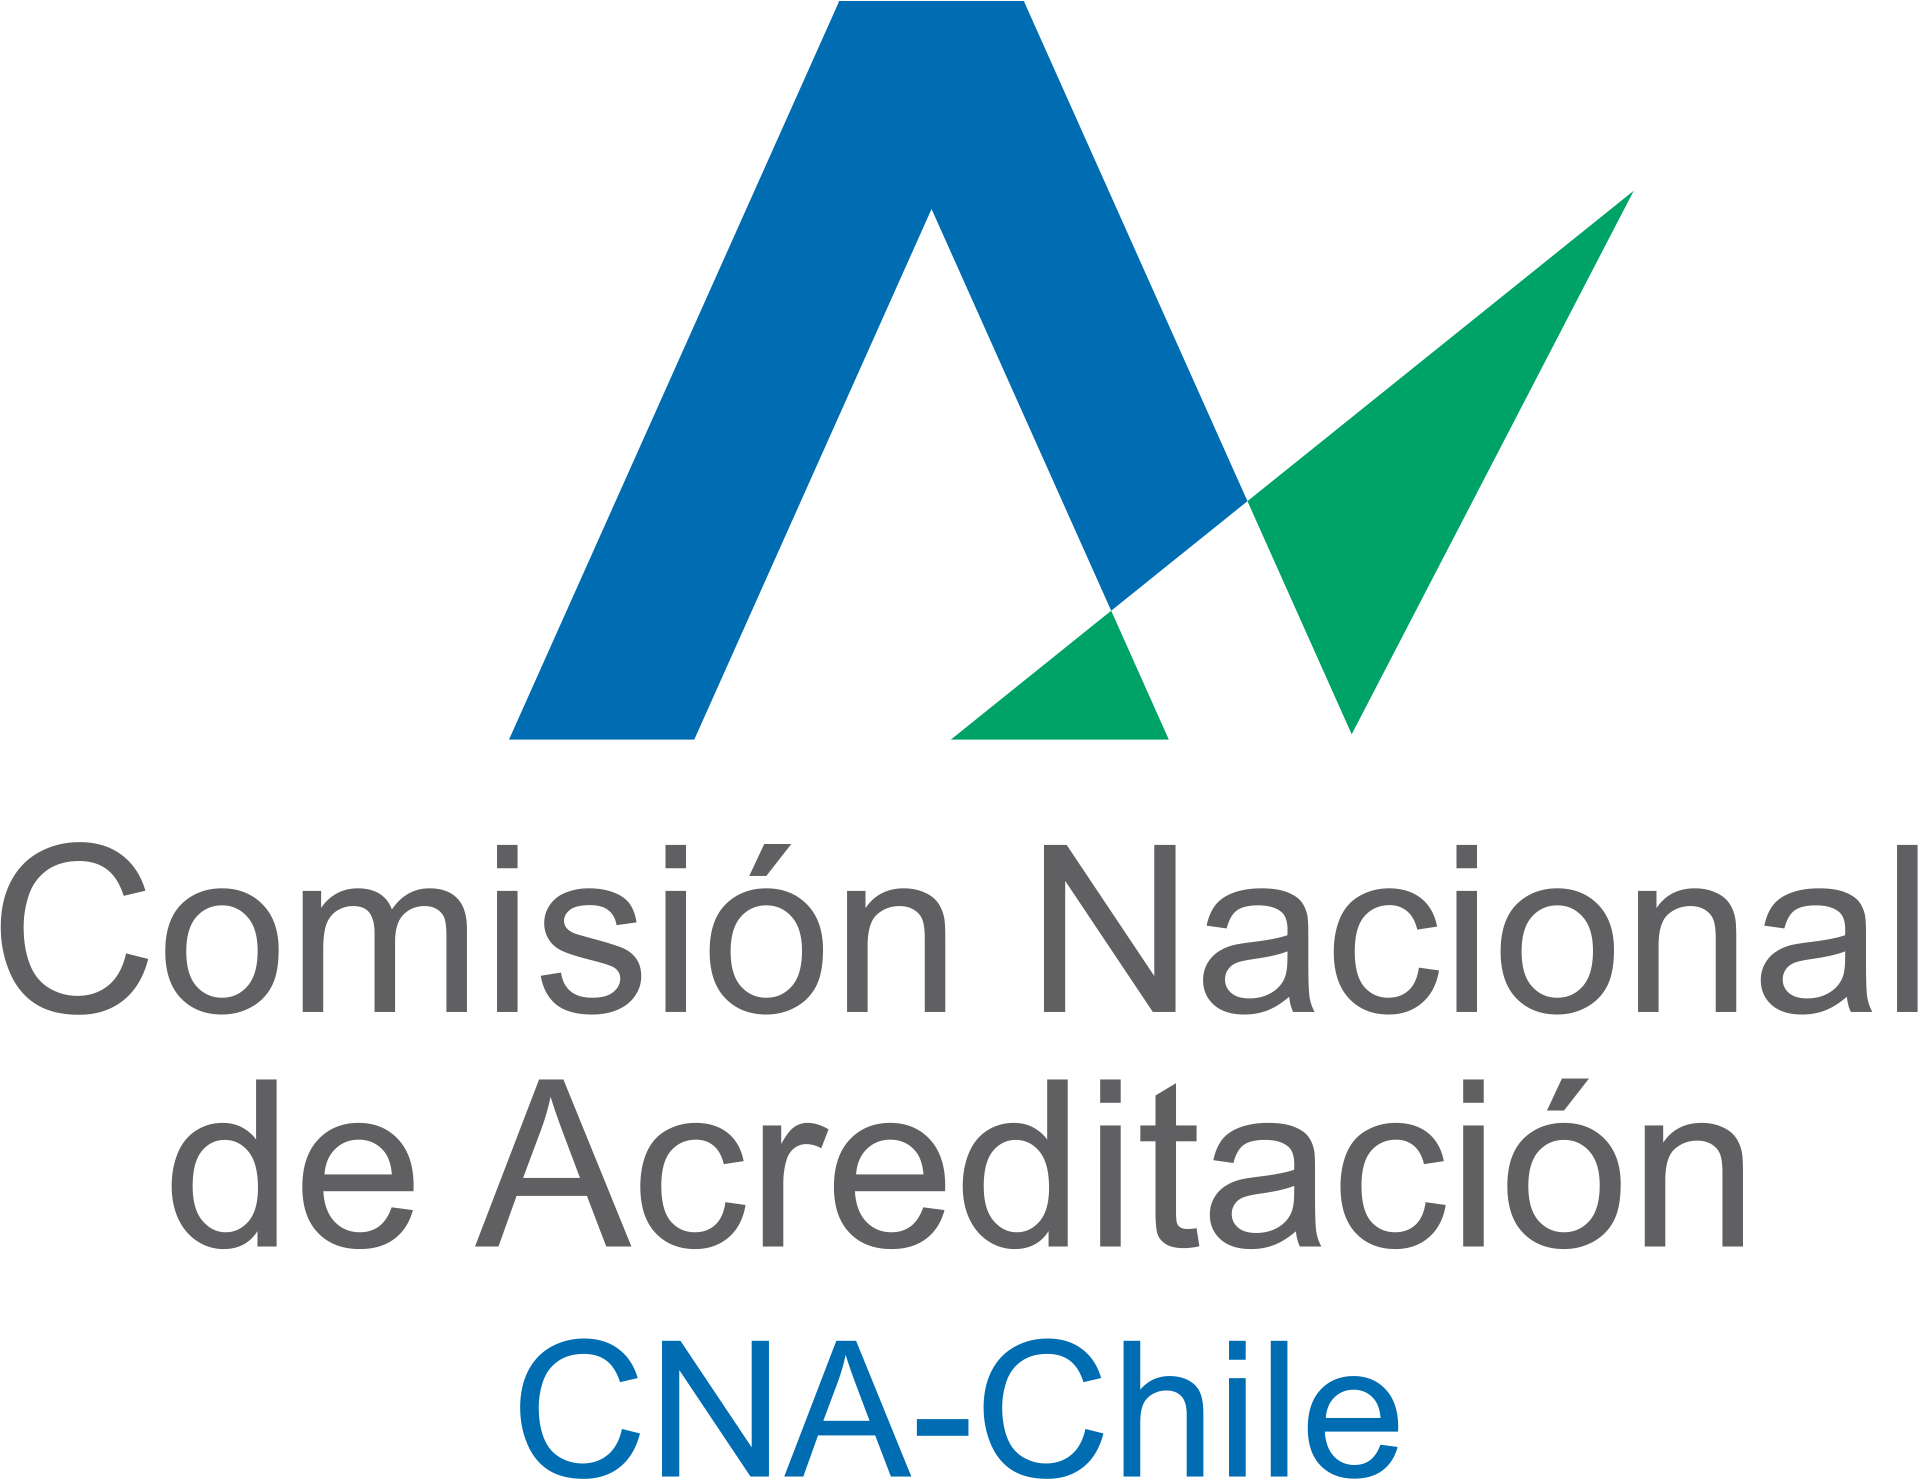 Imagen logo comisión nacional de acreditación CNA